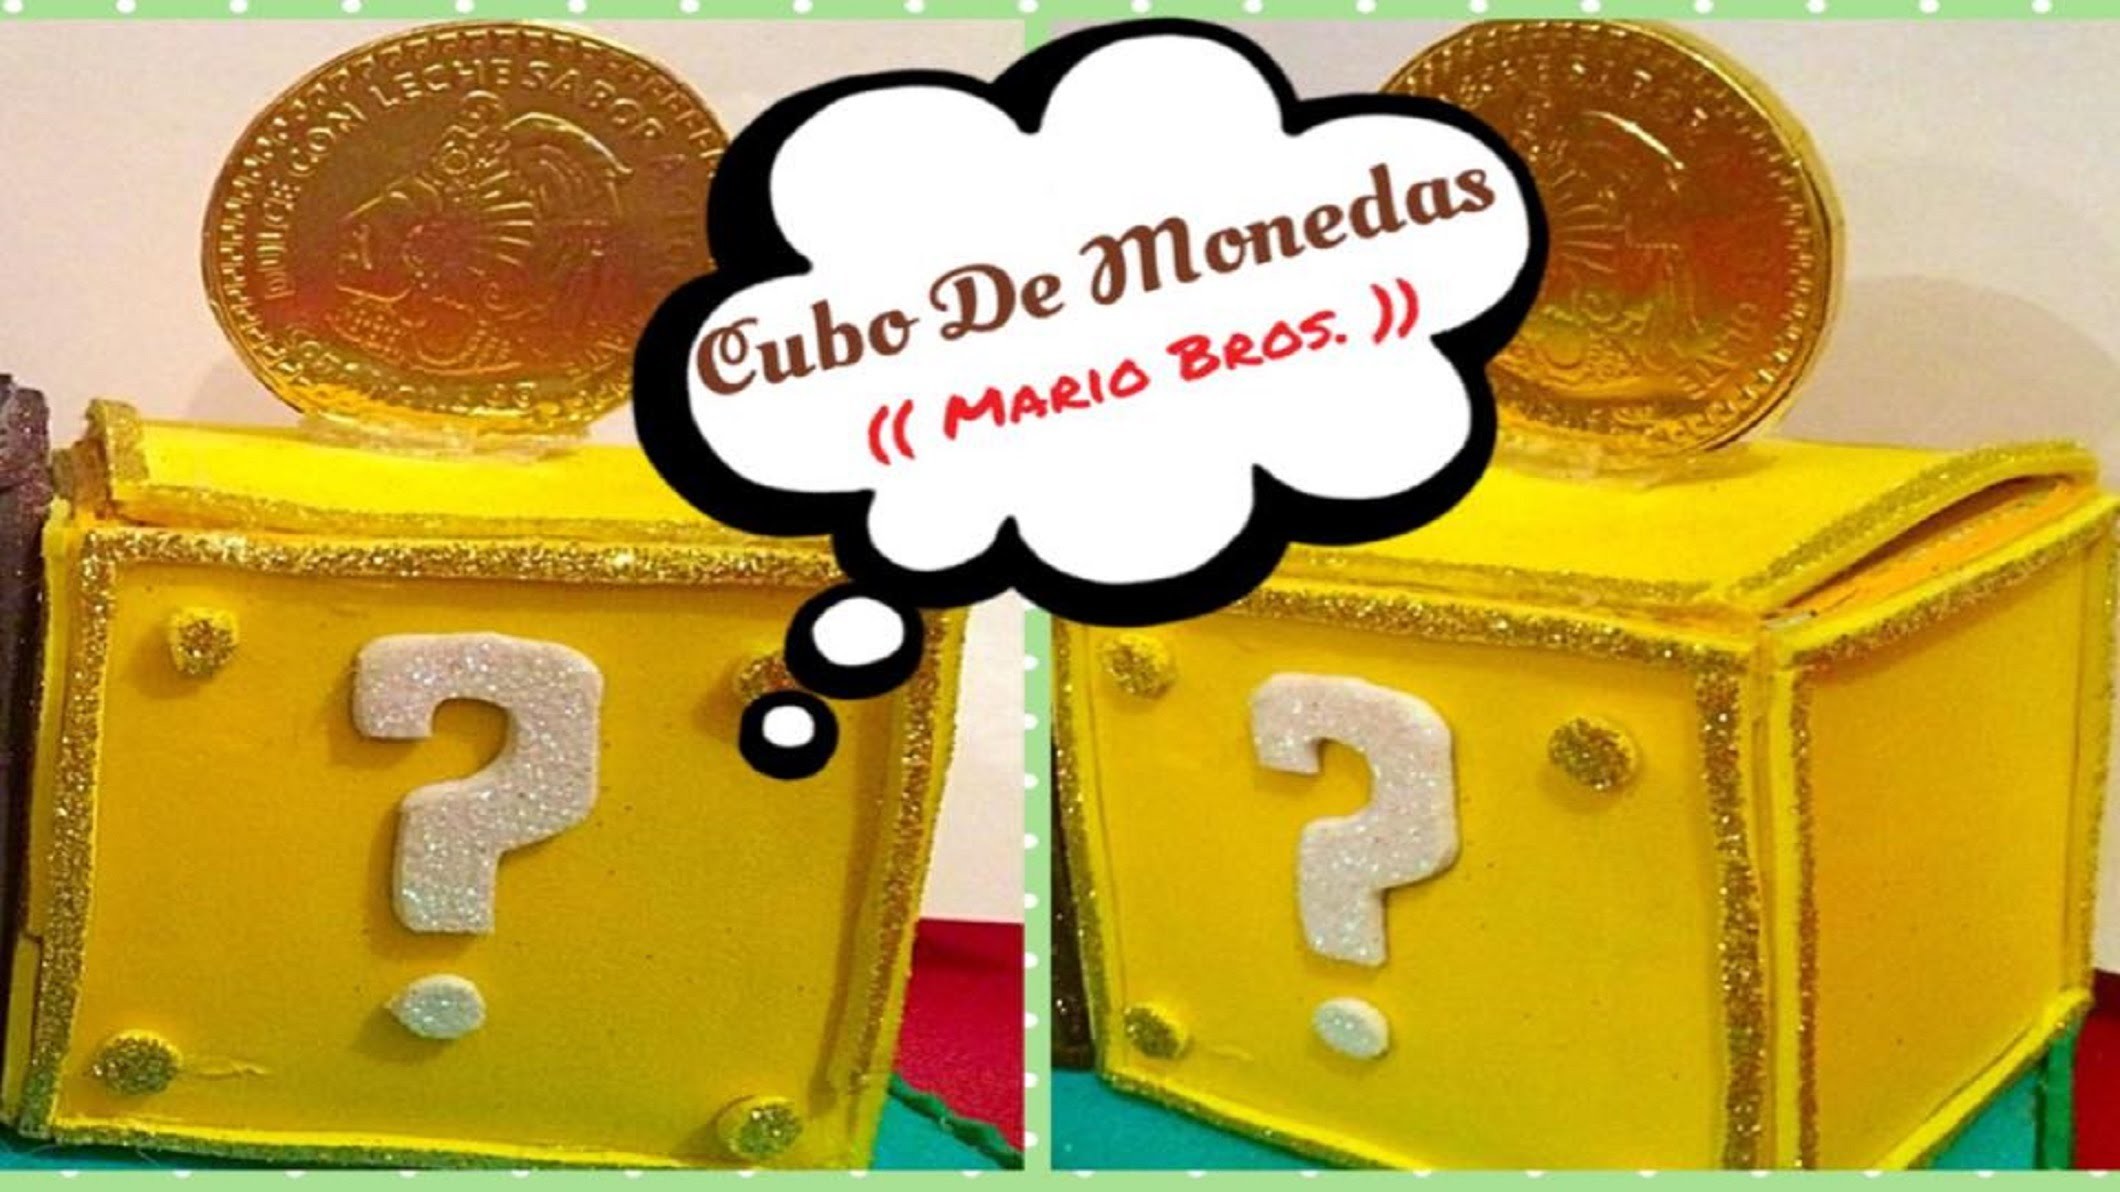 Cubos De Monedas (( Mario Bros. ))